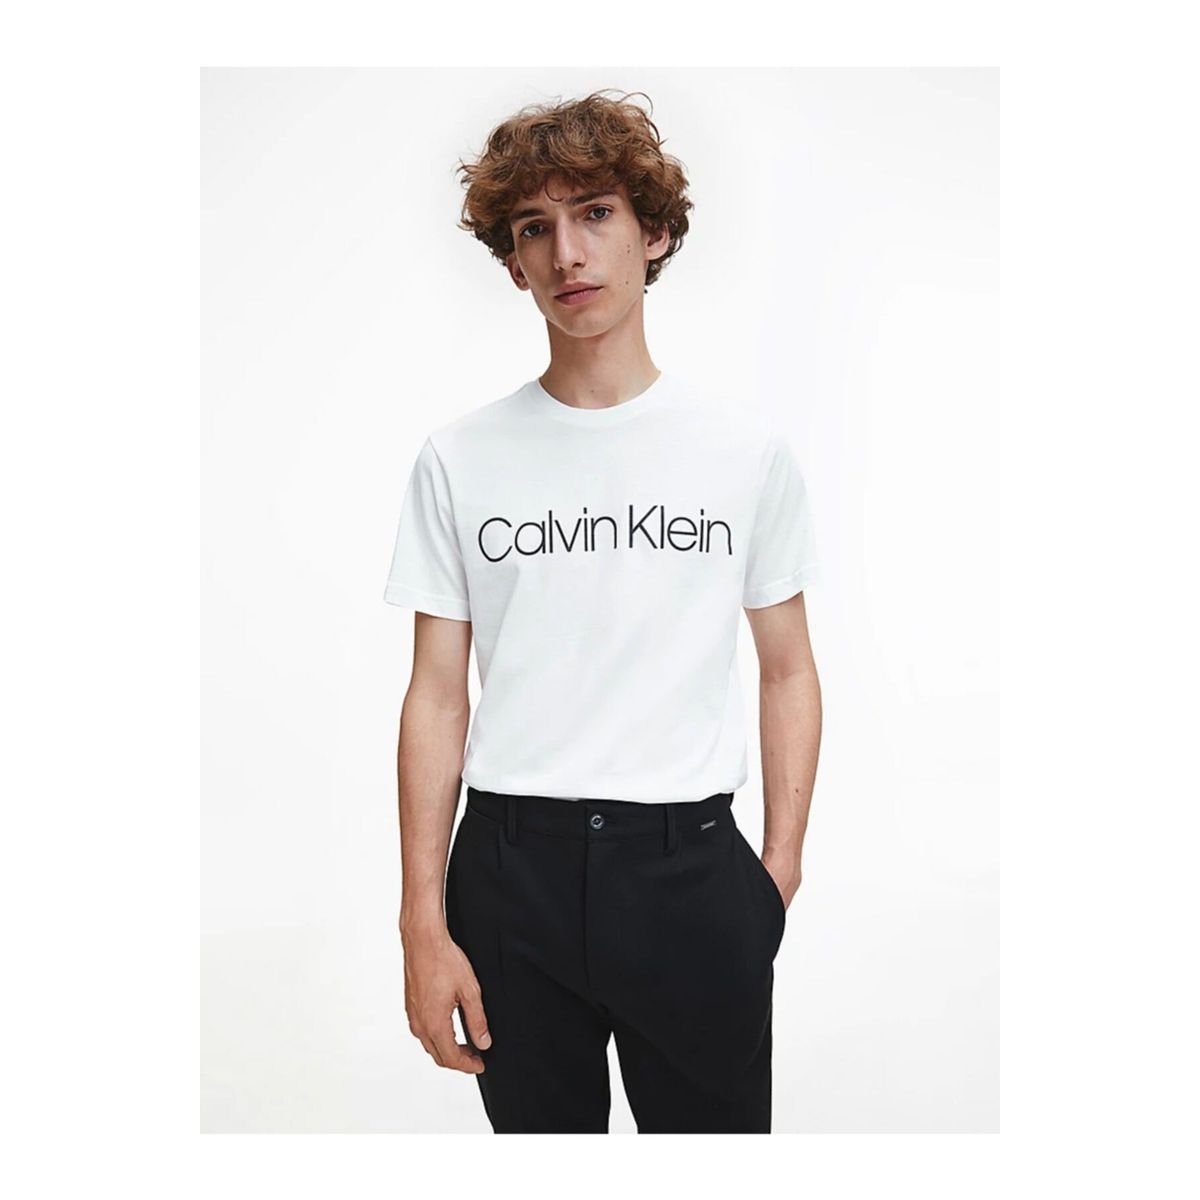 Calvin Klein Erkek T-shirt Fiyatları